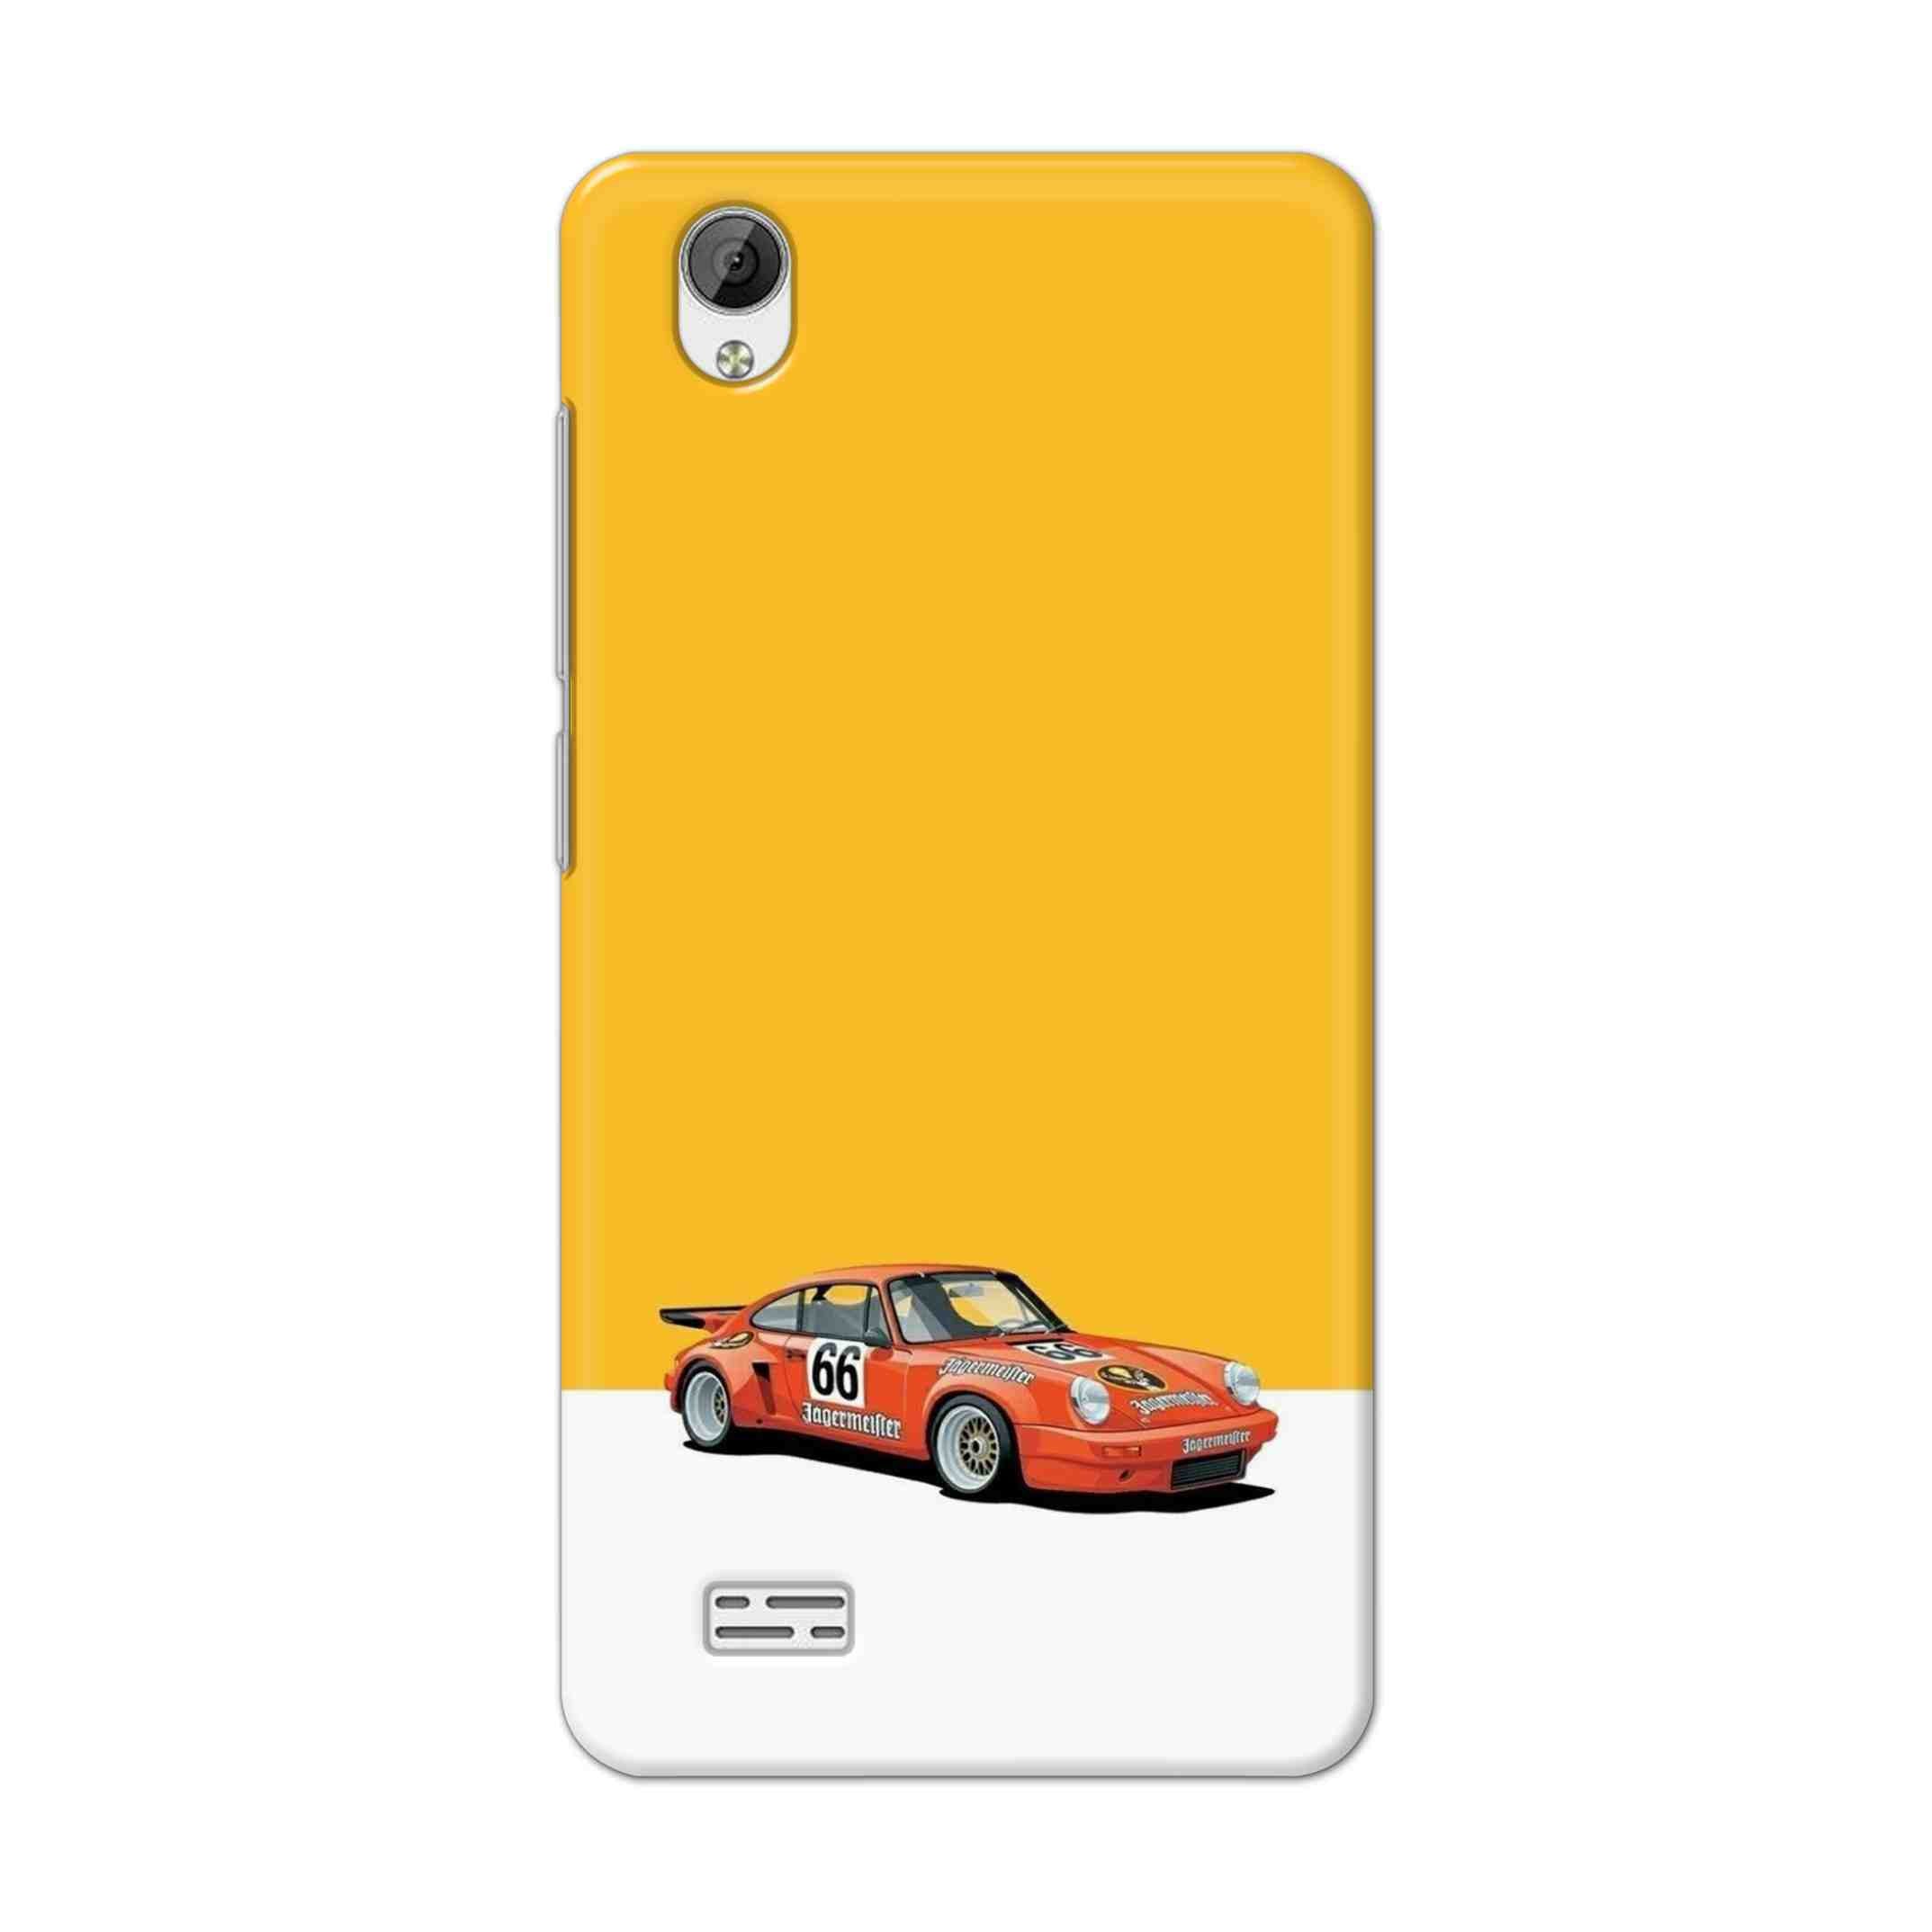 Buy Porche Hard Back Mobile Phone Case Cover For Vivo Y31 Online